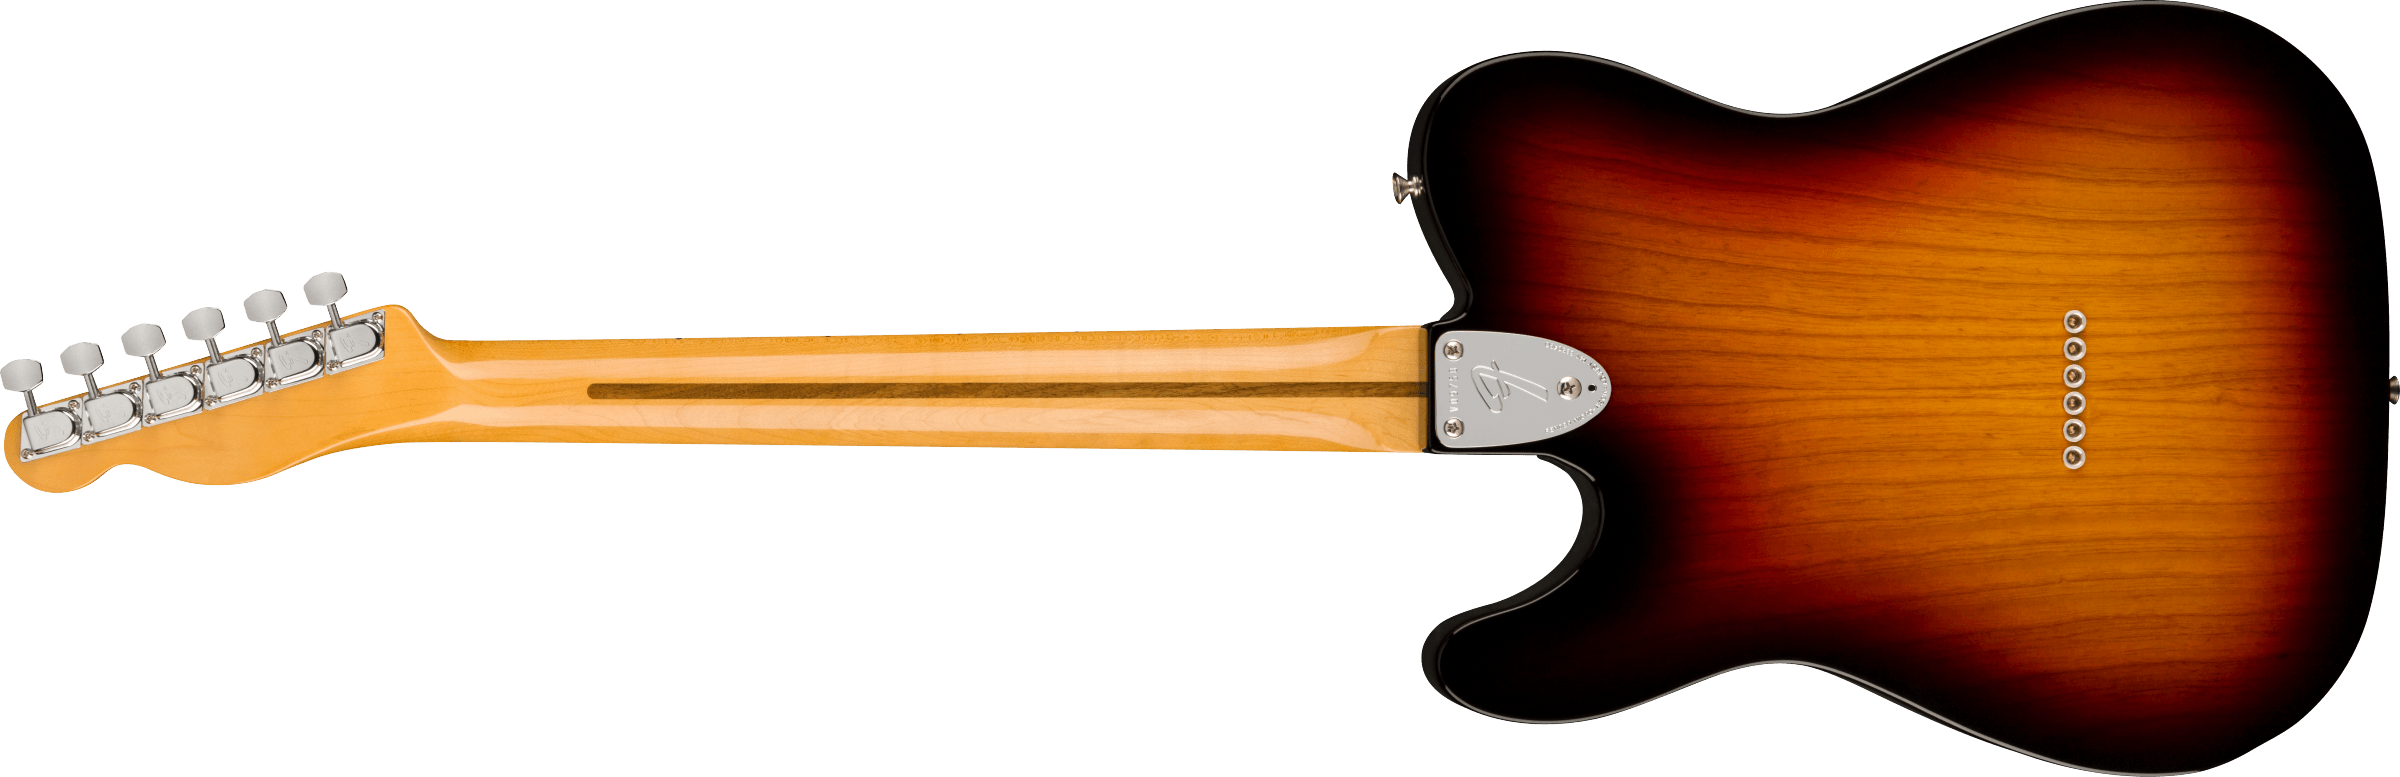 Fender American Vintage II 1972 Telecaster Thinline, Maple Fingerboard, 3-Color Sunburst 0110392800